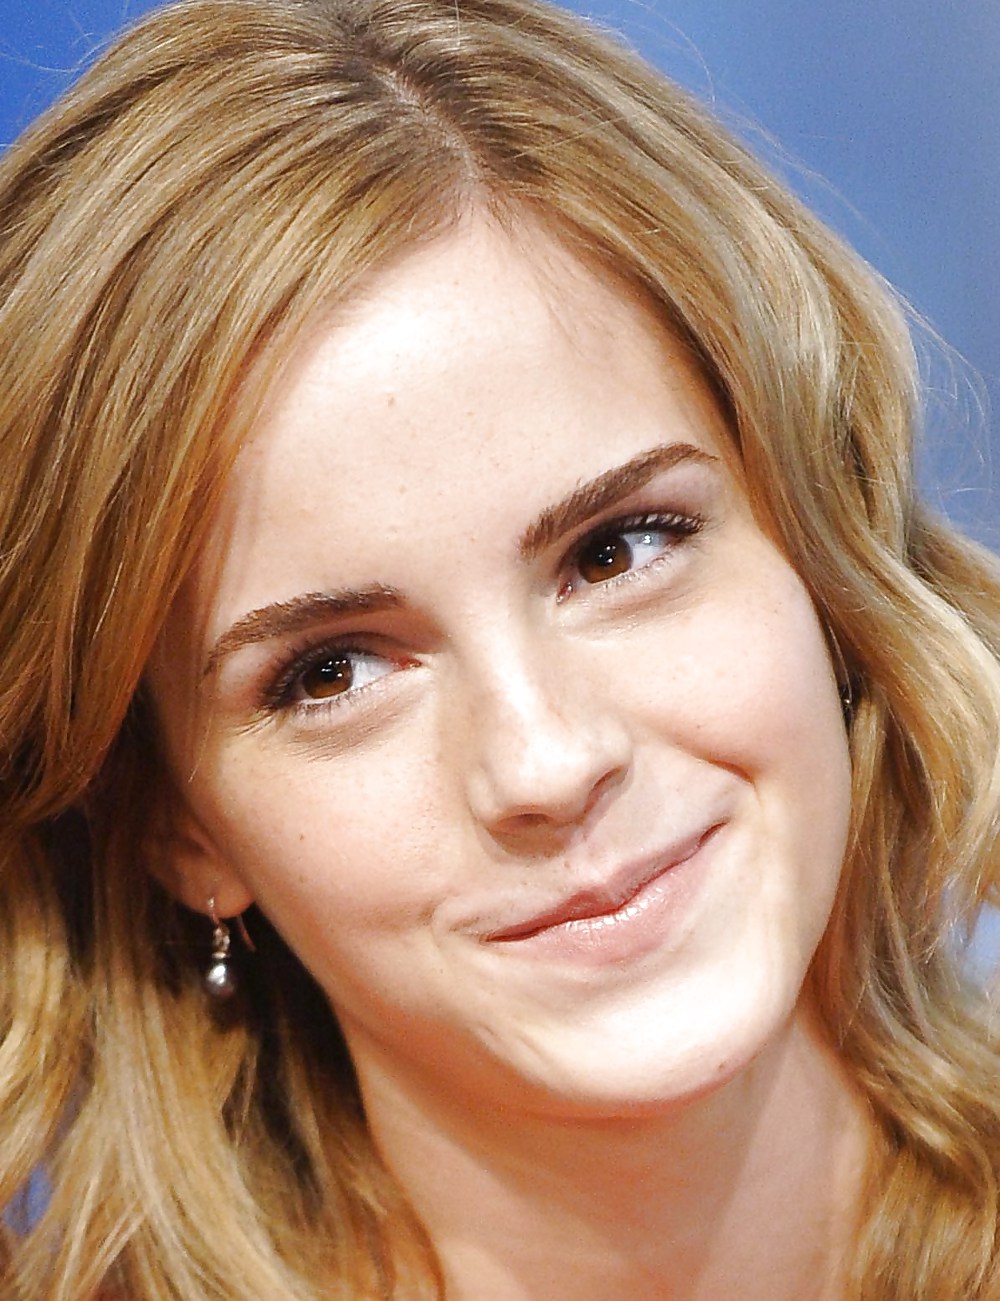 Pieds Emma Watson Et Le Visage Méritent Sperme Chaud #11155628